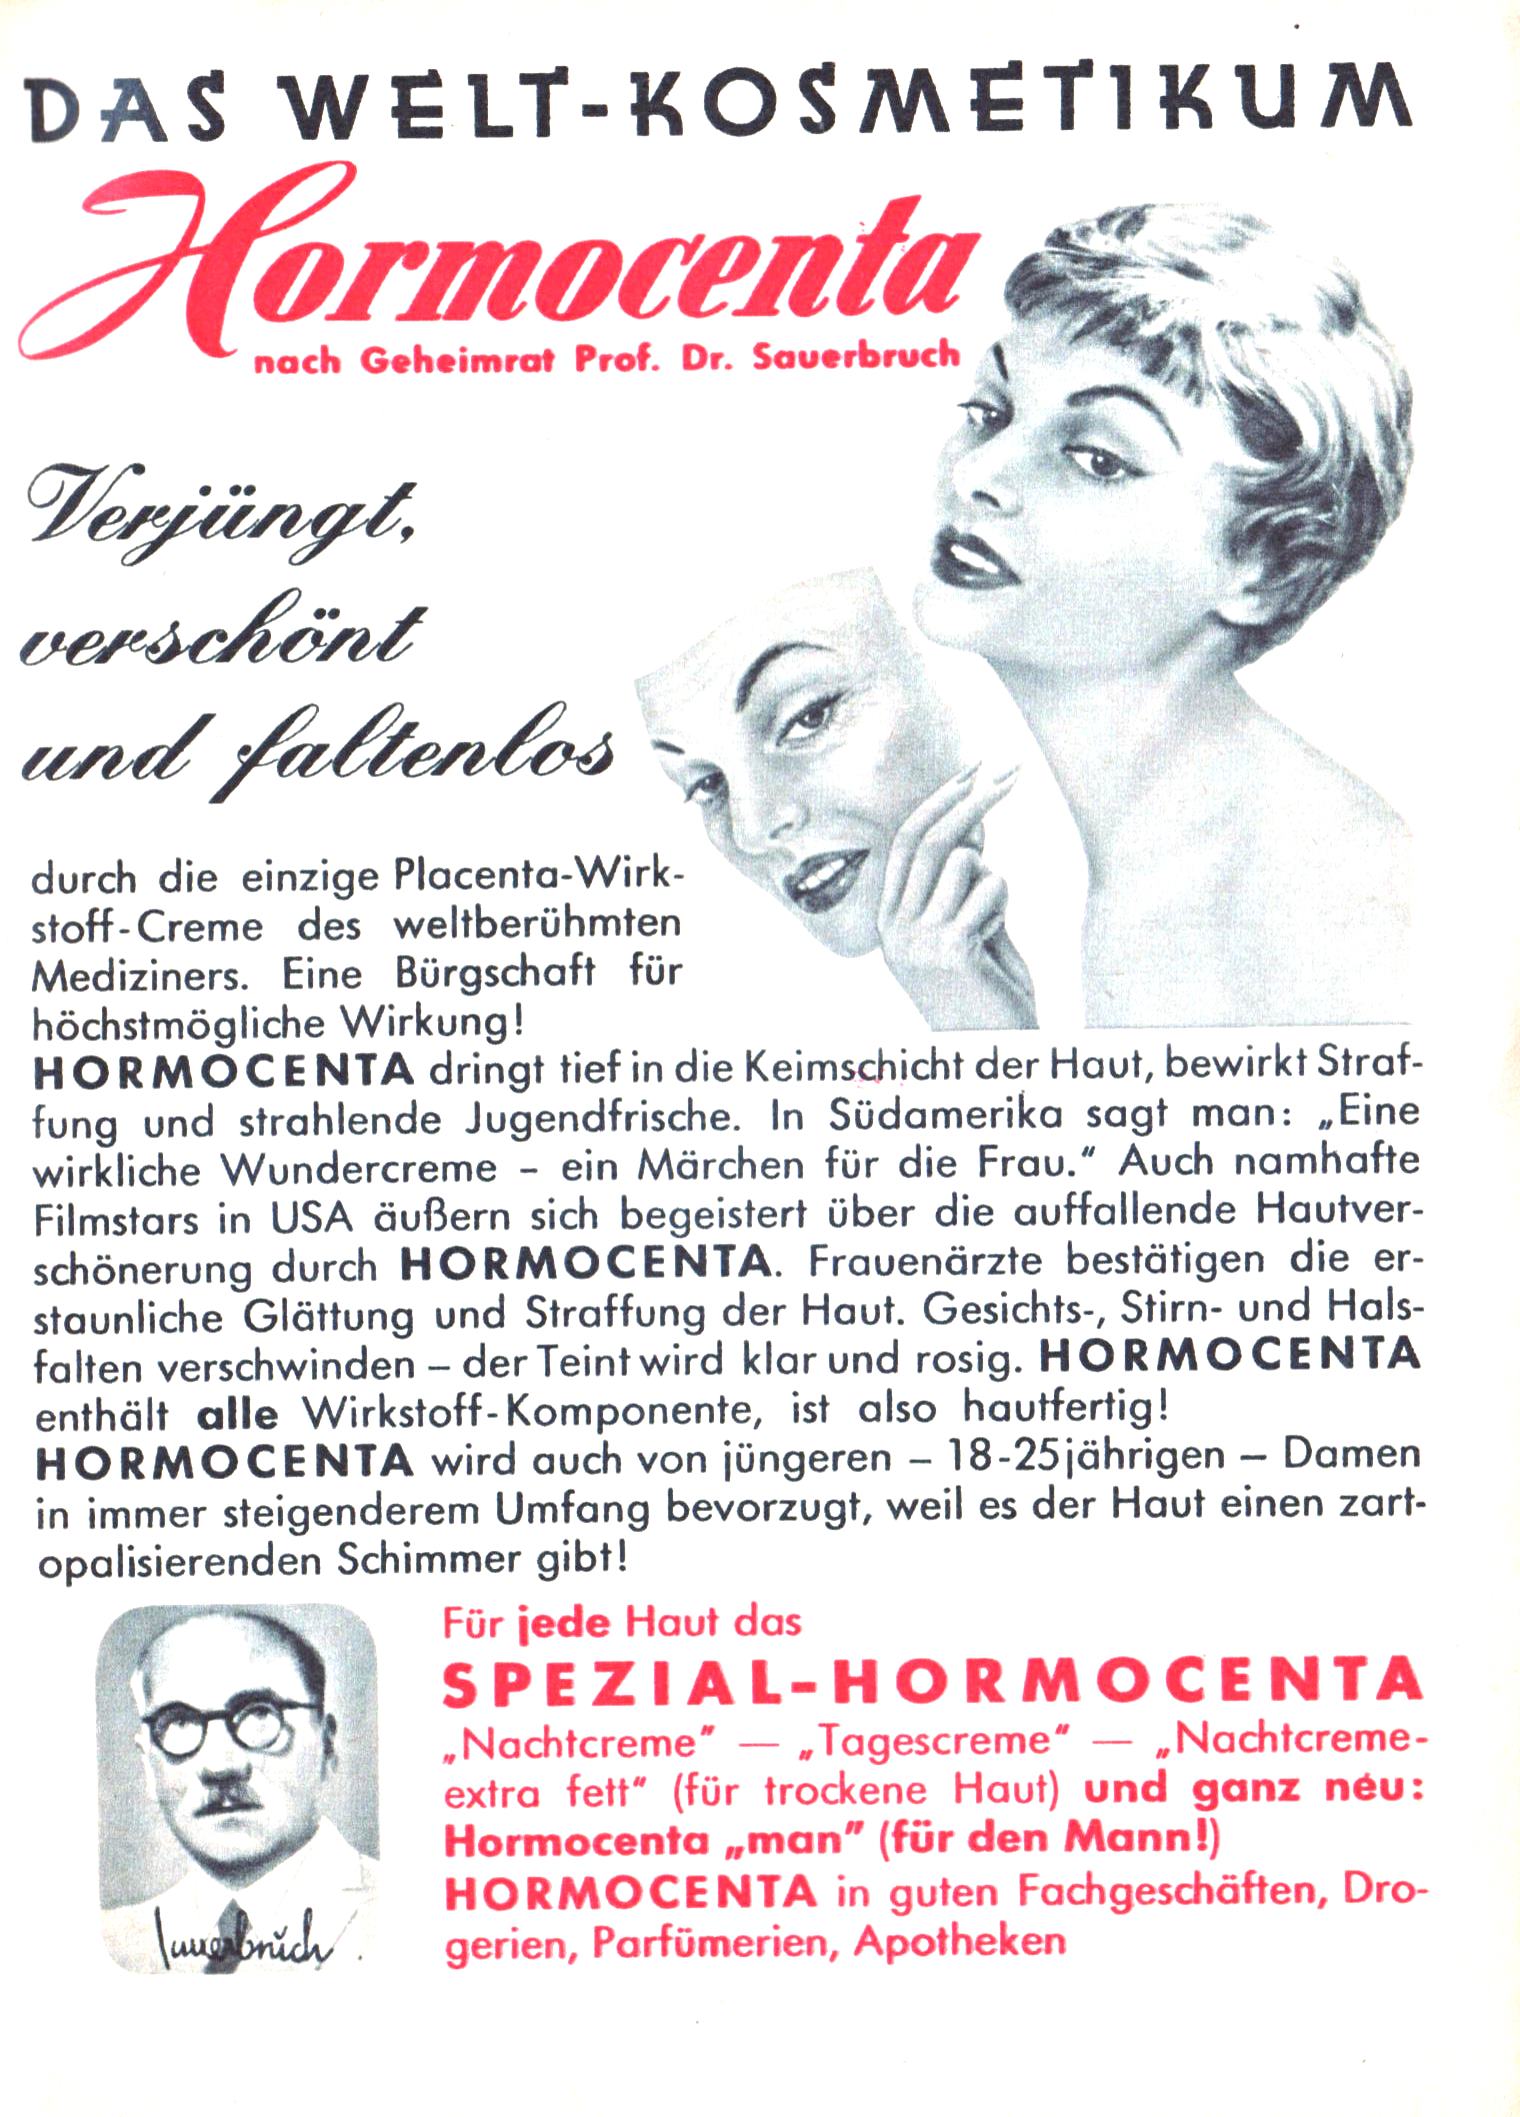 Hormocenta 1962.jpg